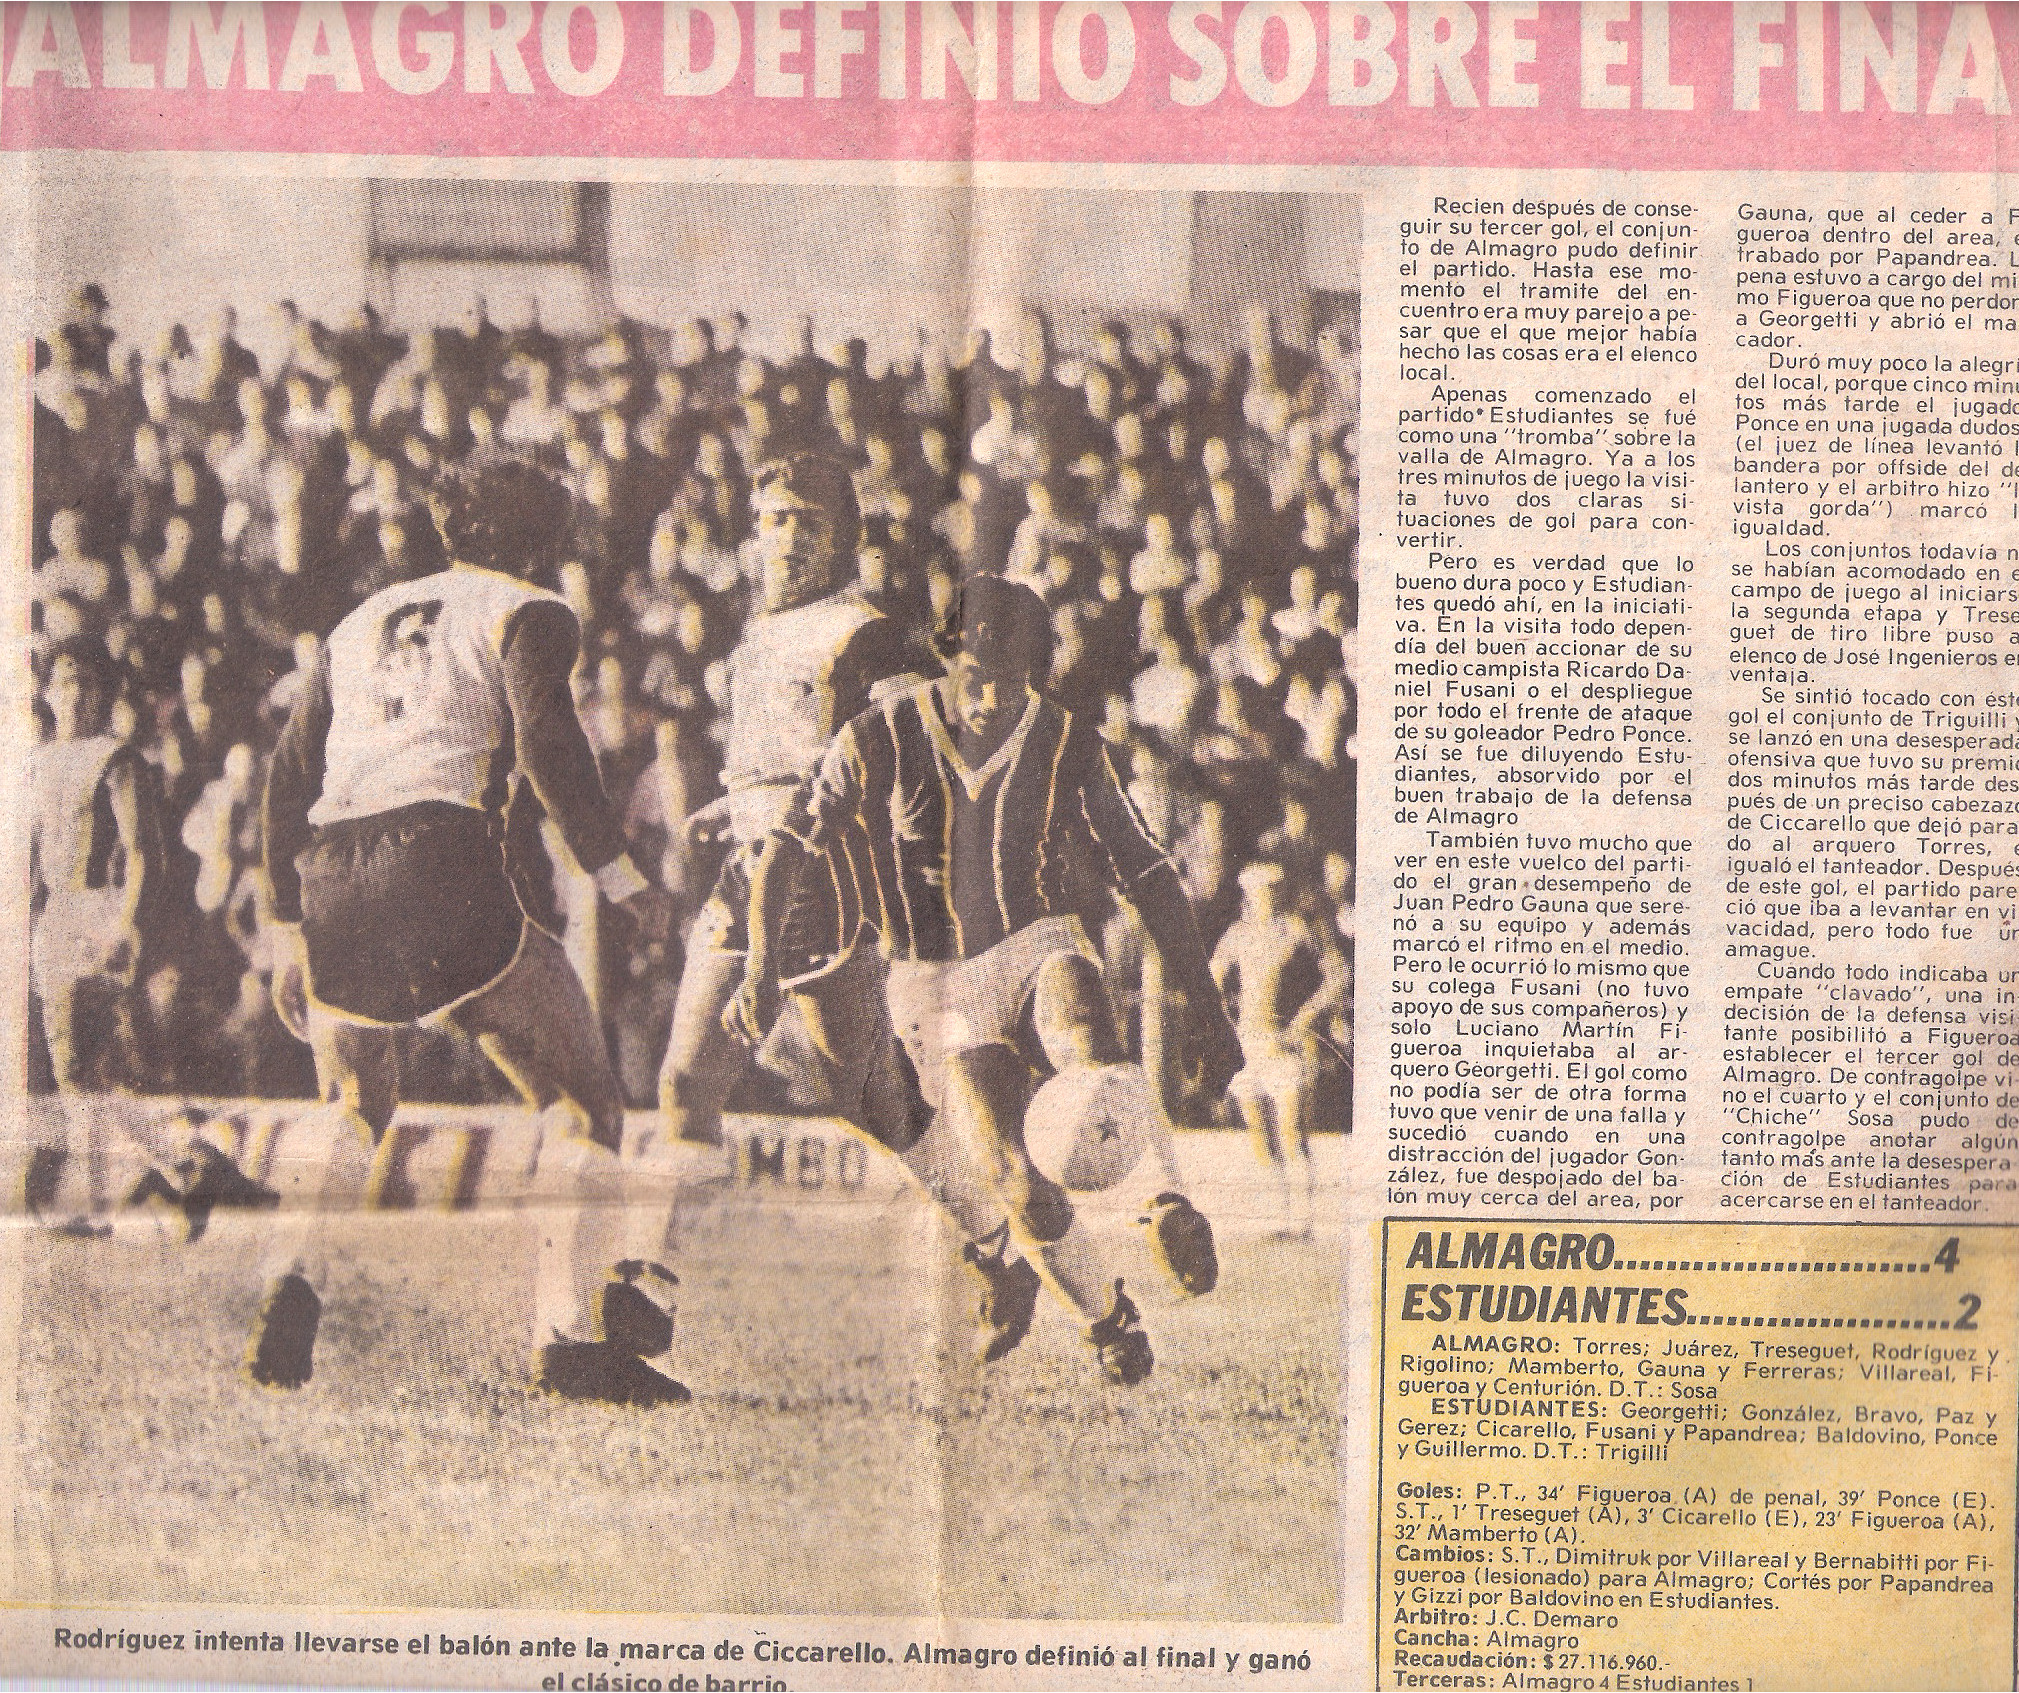 21-6-1980-almagro-estudiantesba-diario-popular